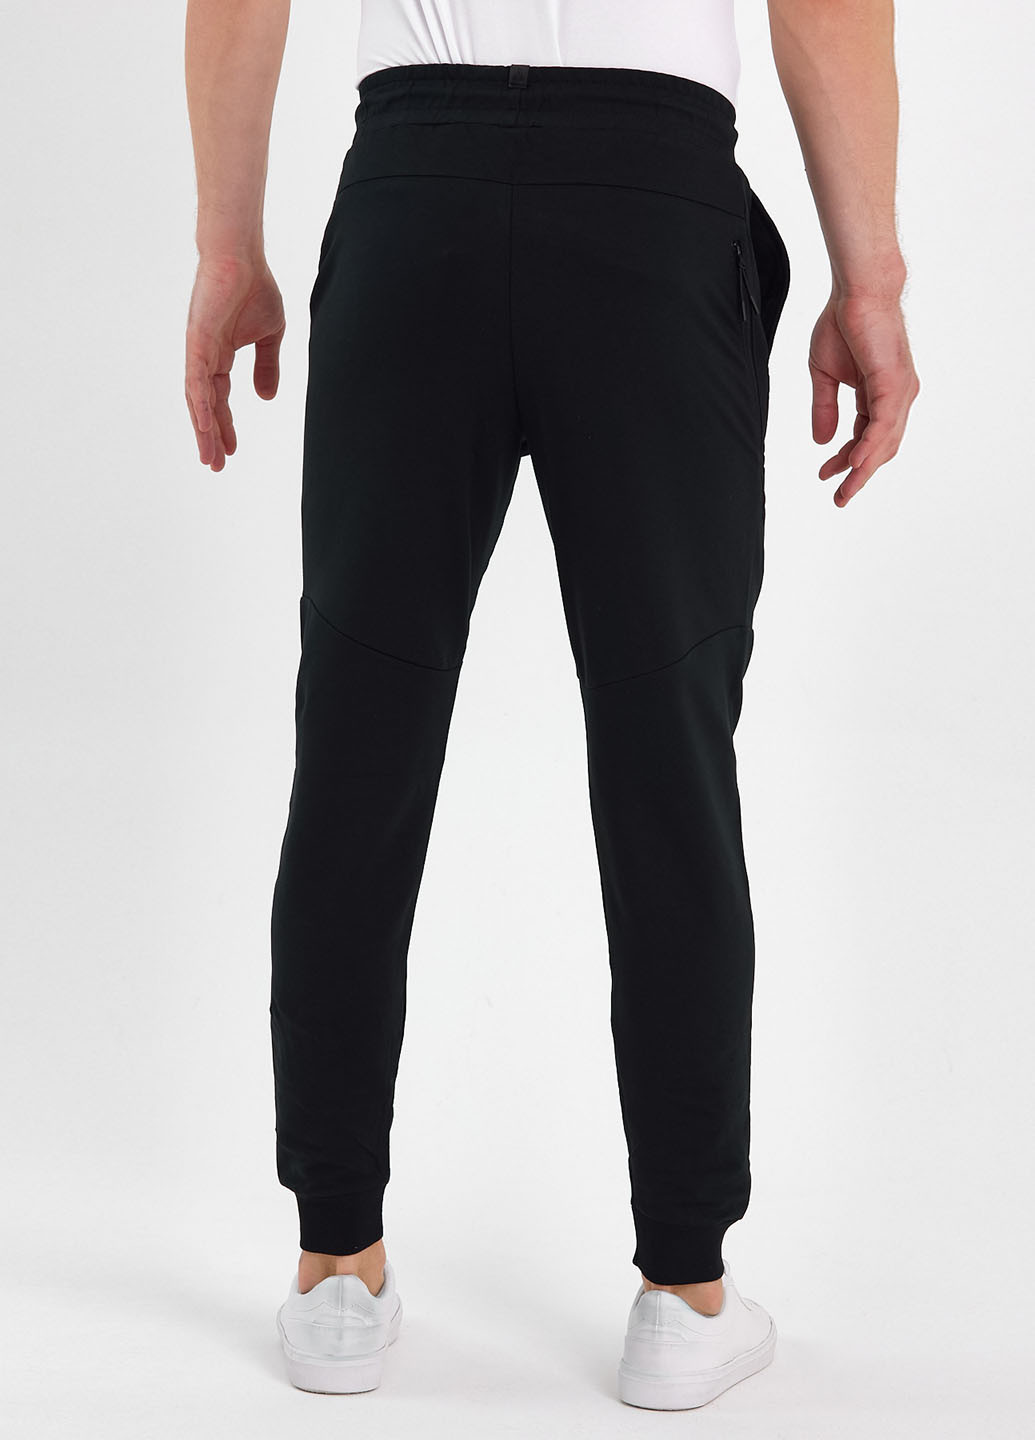 Черные спортивные демисезонные джоггеры брюки Trend Collection